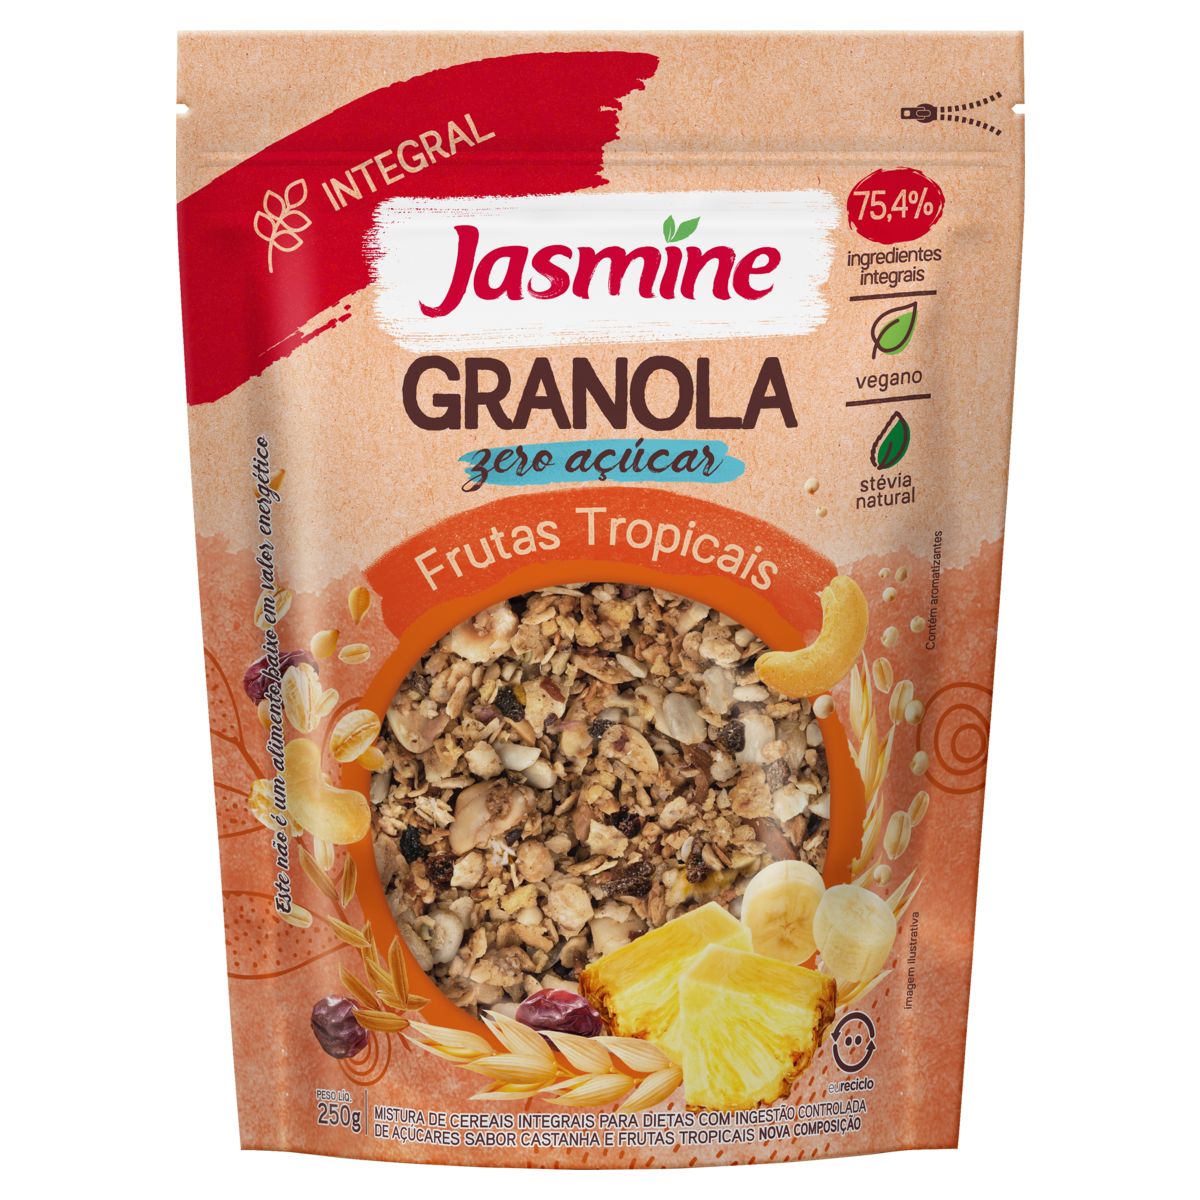 Granola Jasmine 75,4% Integral Frutas Tropicais Zero Açúcar Pouch 250g